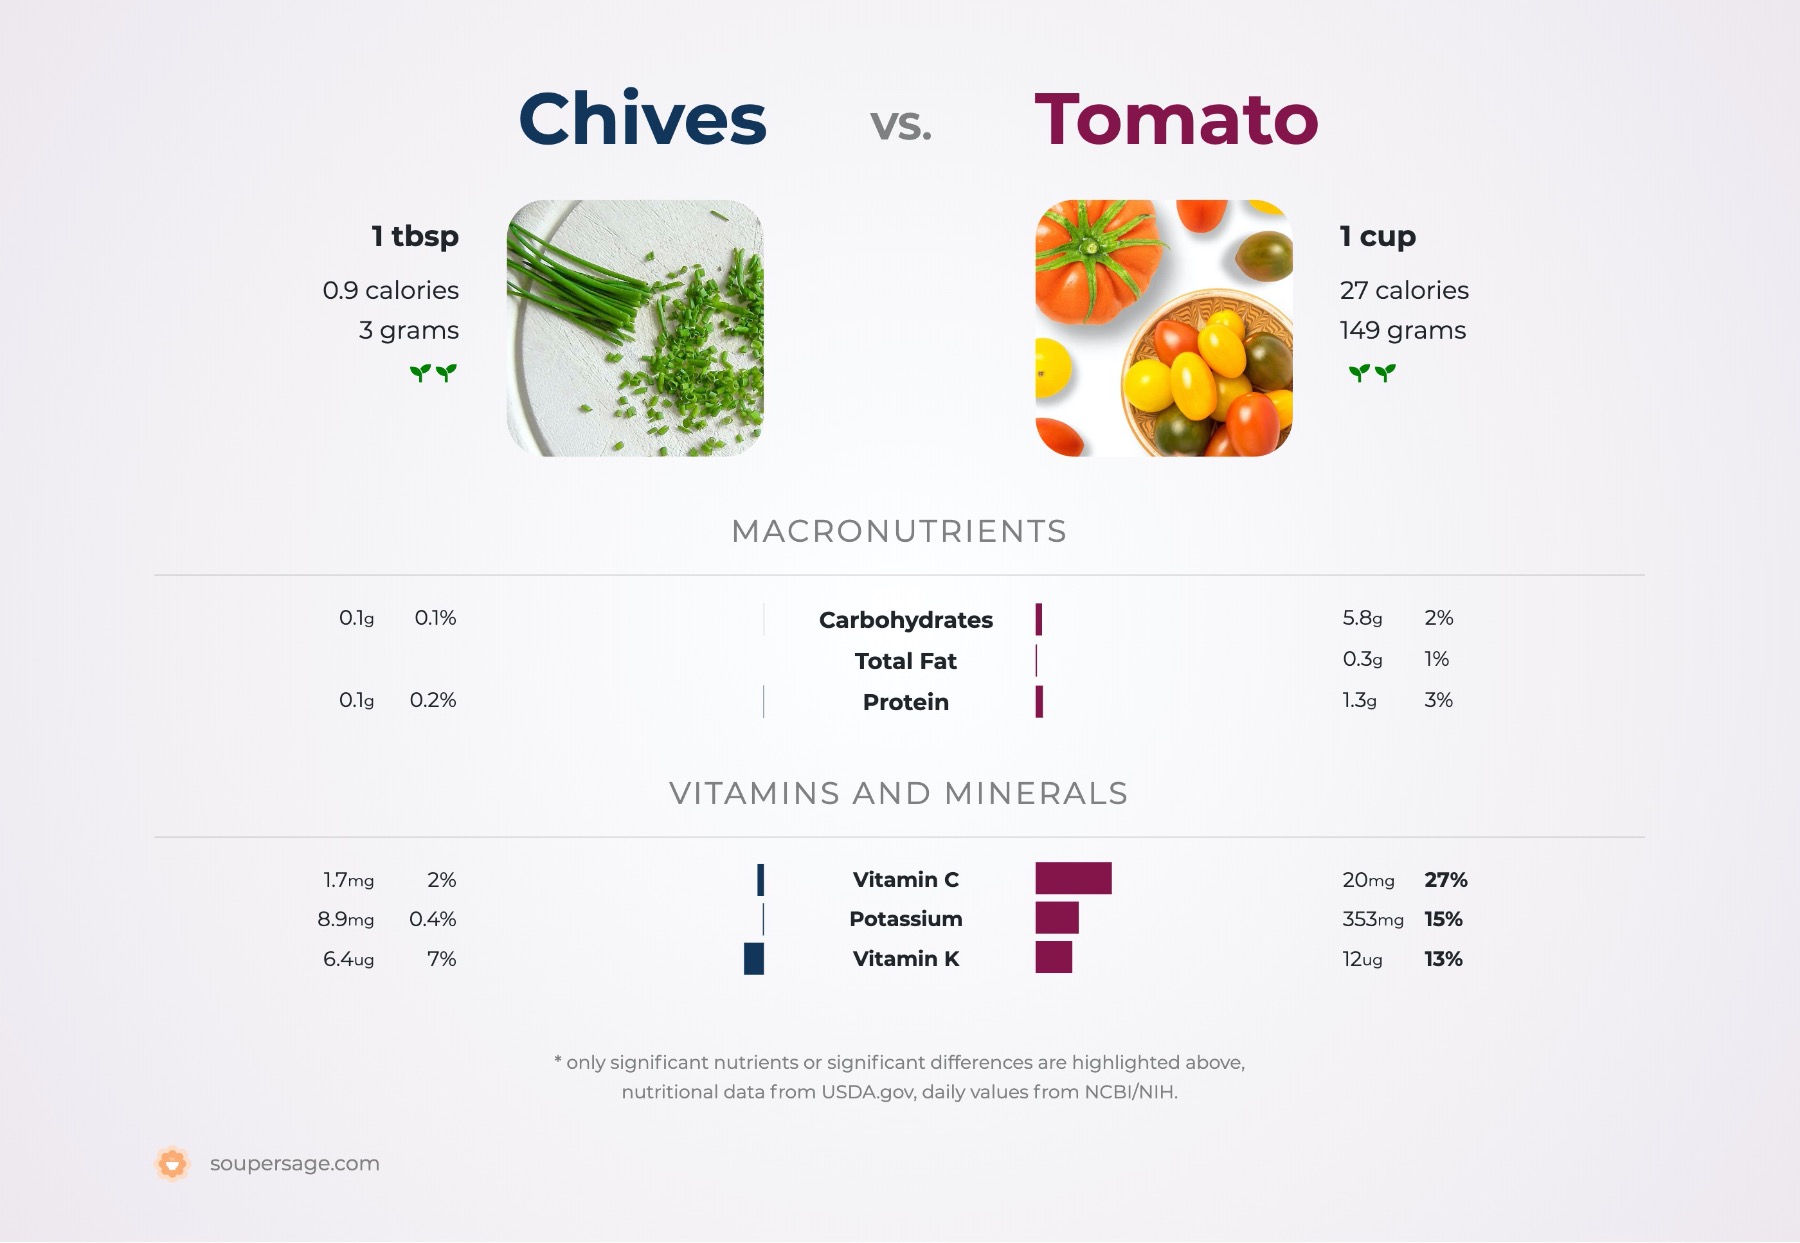 nutrition comparison of chives vs. tomato